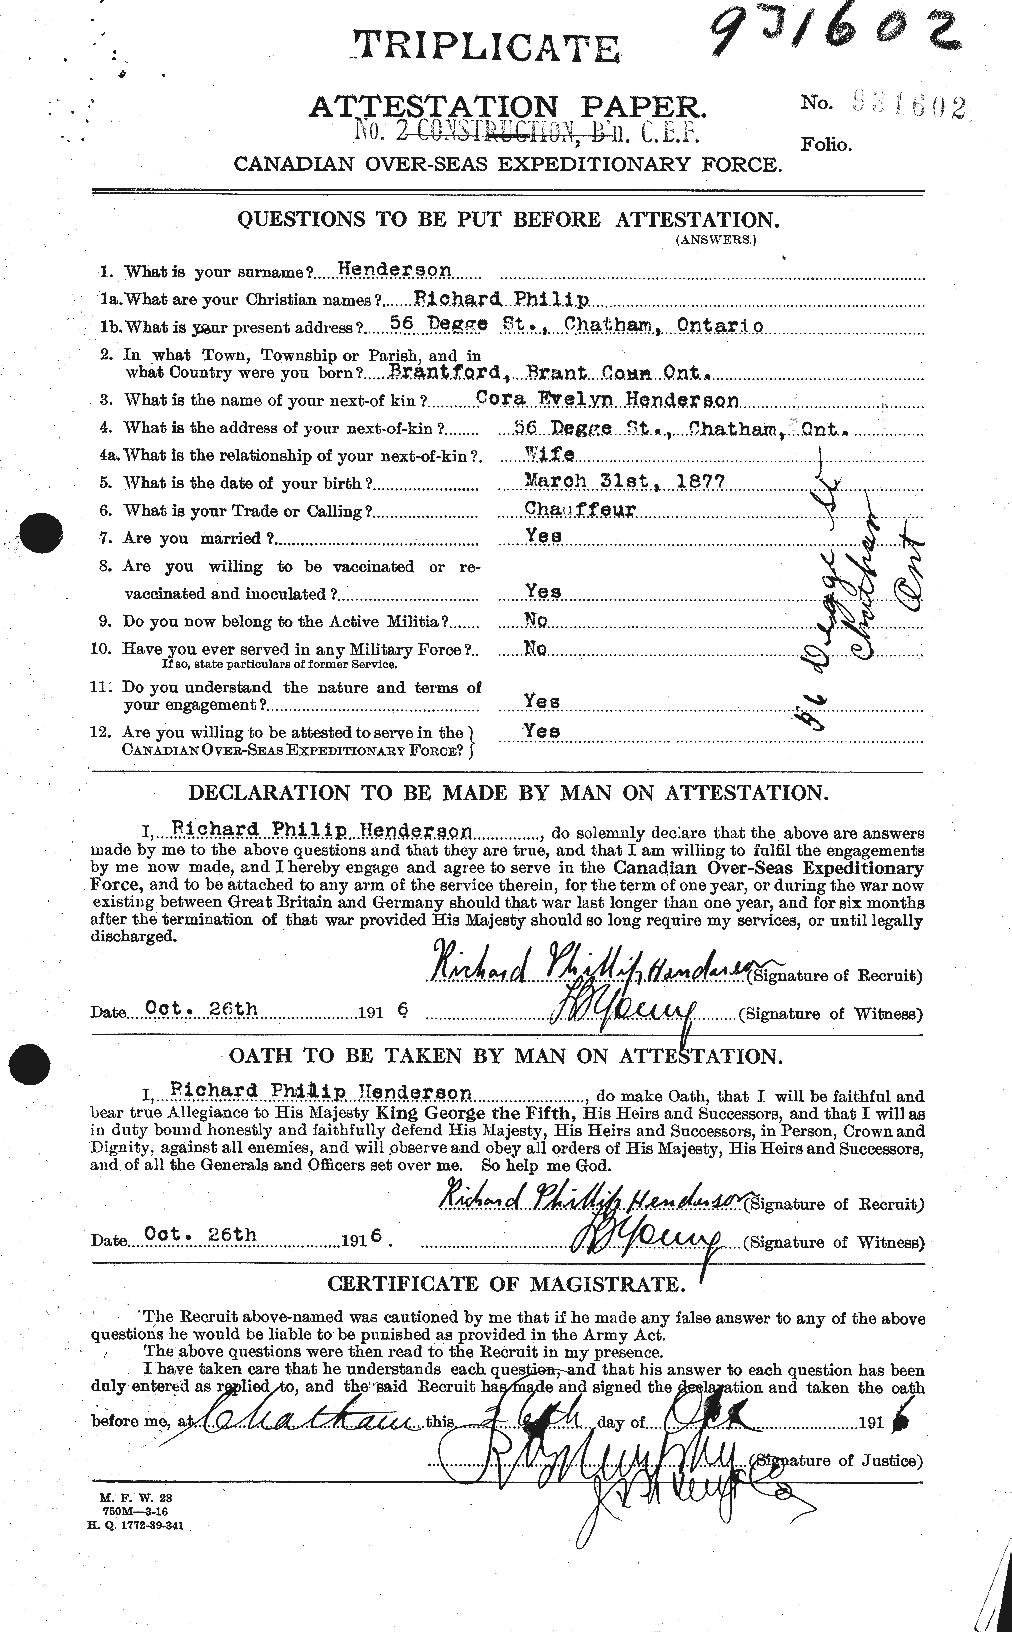 Dossiers du Personnel de la Première Guerre mondiale - CEC 387320a